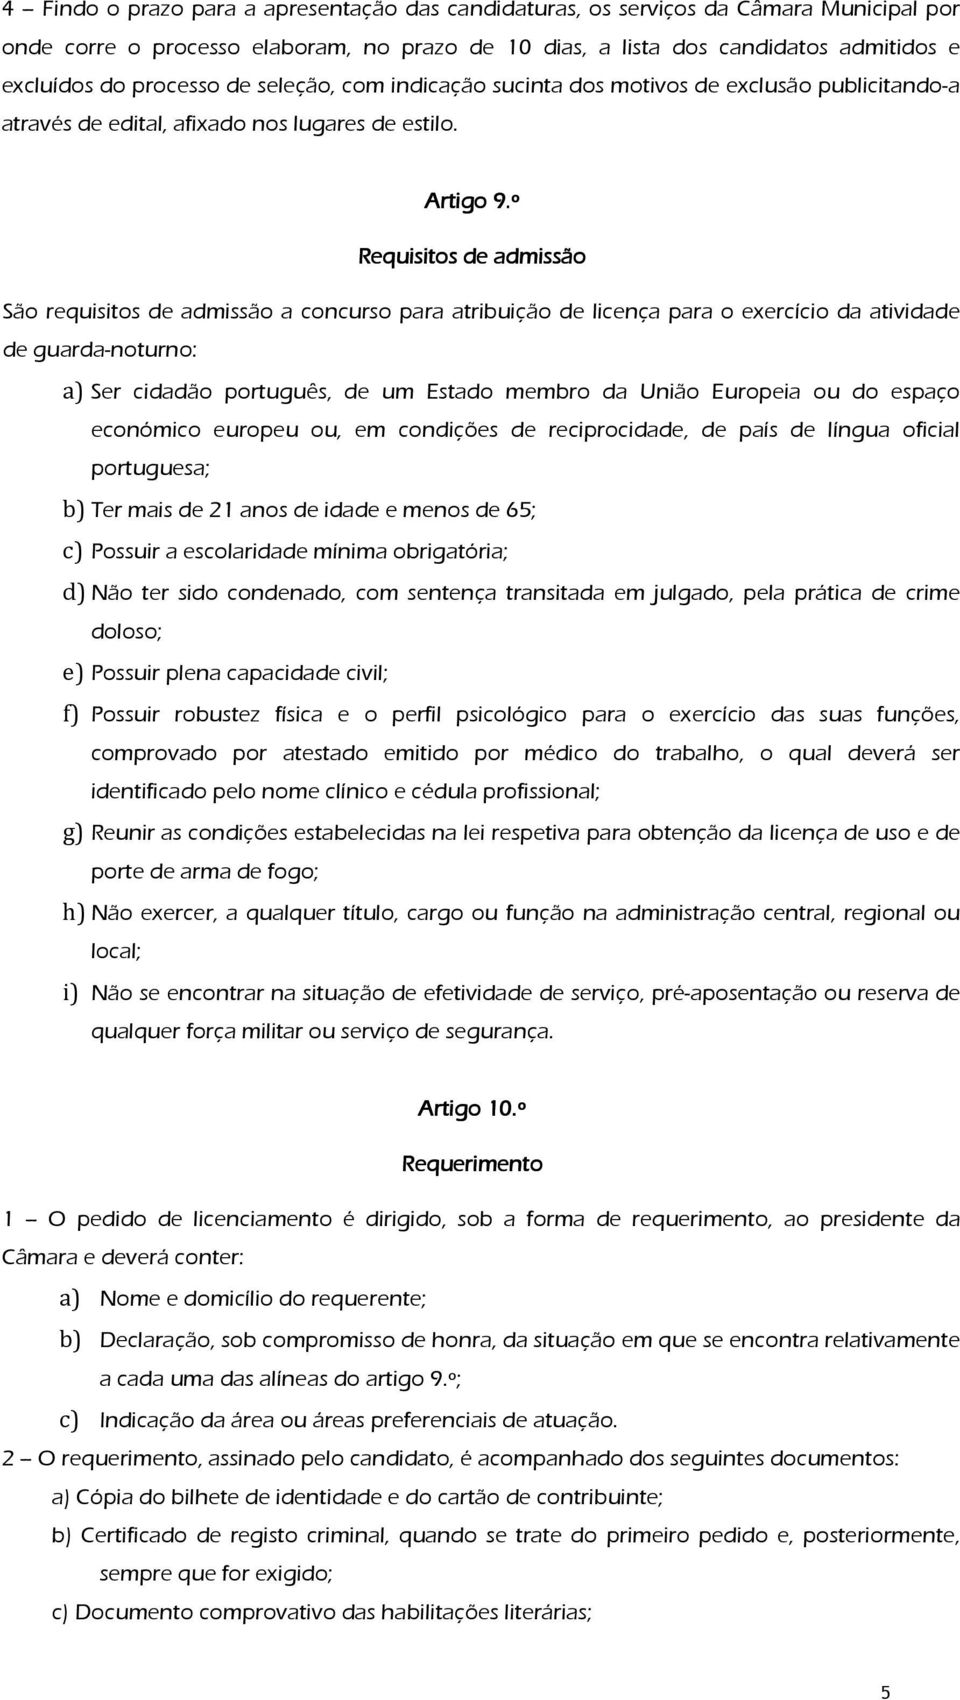 º 9 Requisitos de admissão São requisitos de admissão a concurso para atribuição de licença para o exercício da atividade de guarda-noturno: a) Ser cidadão português, de um Estado membro da União